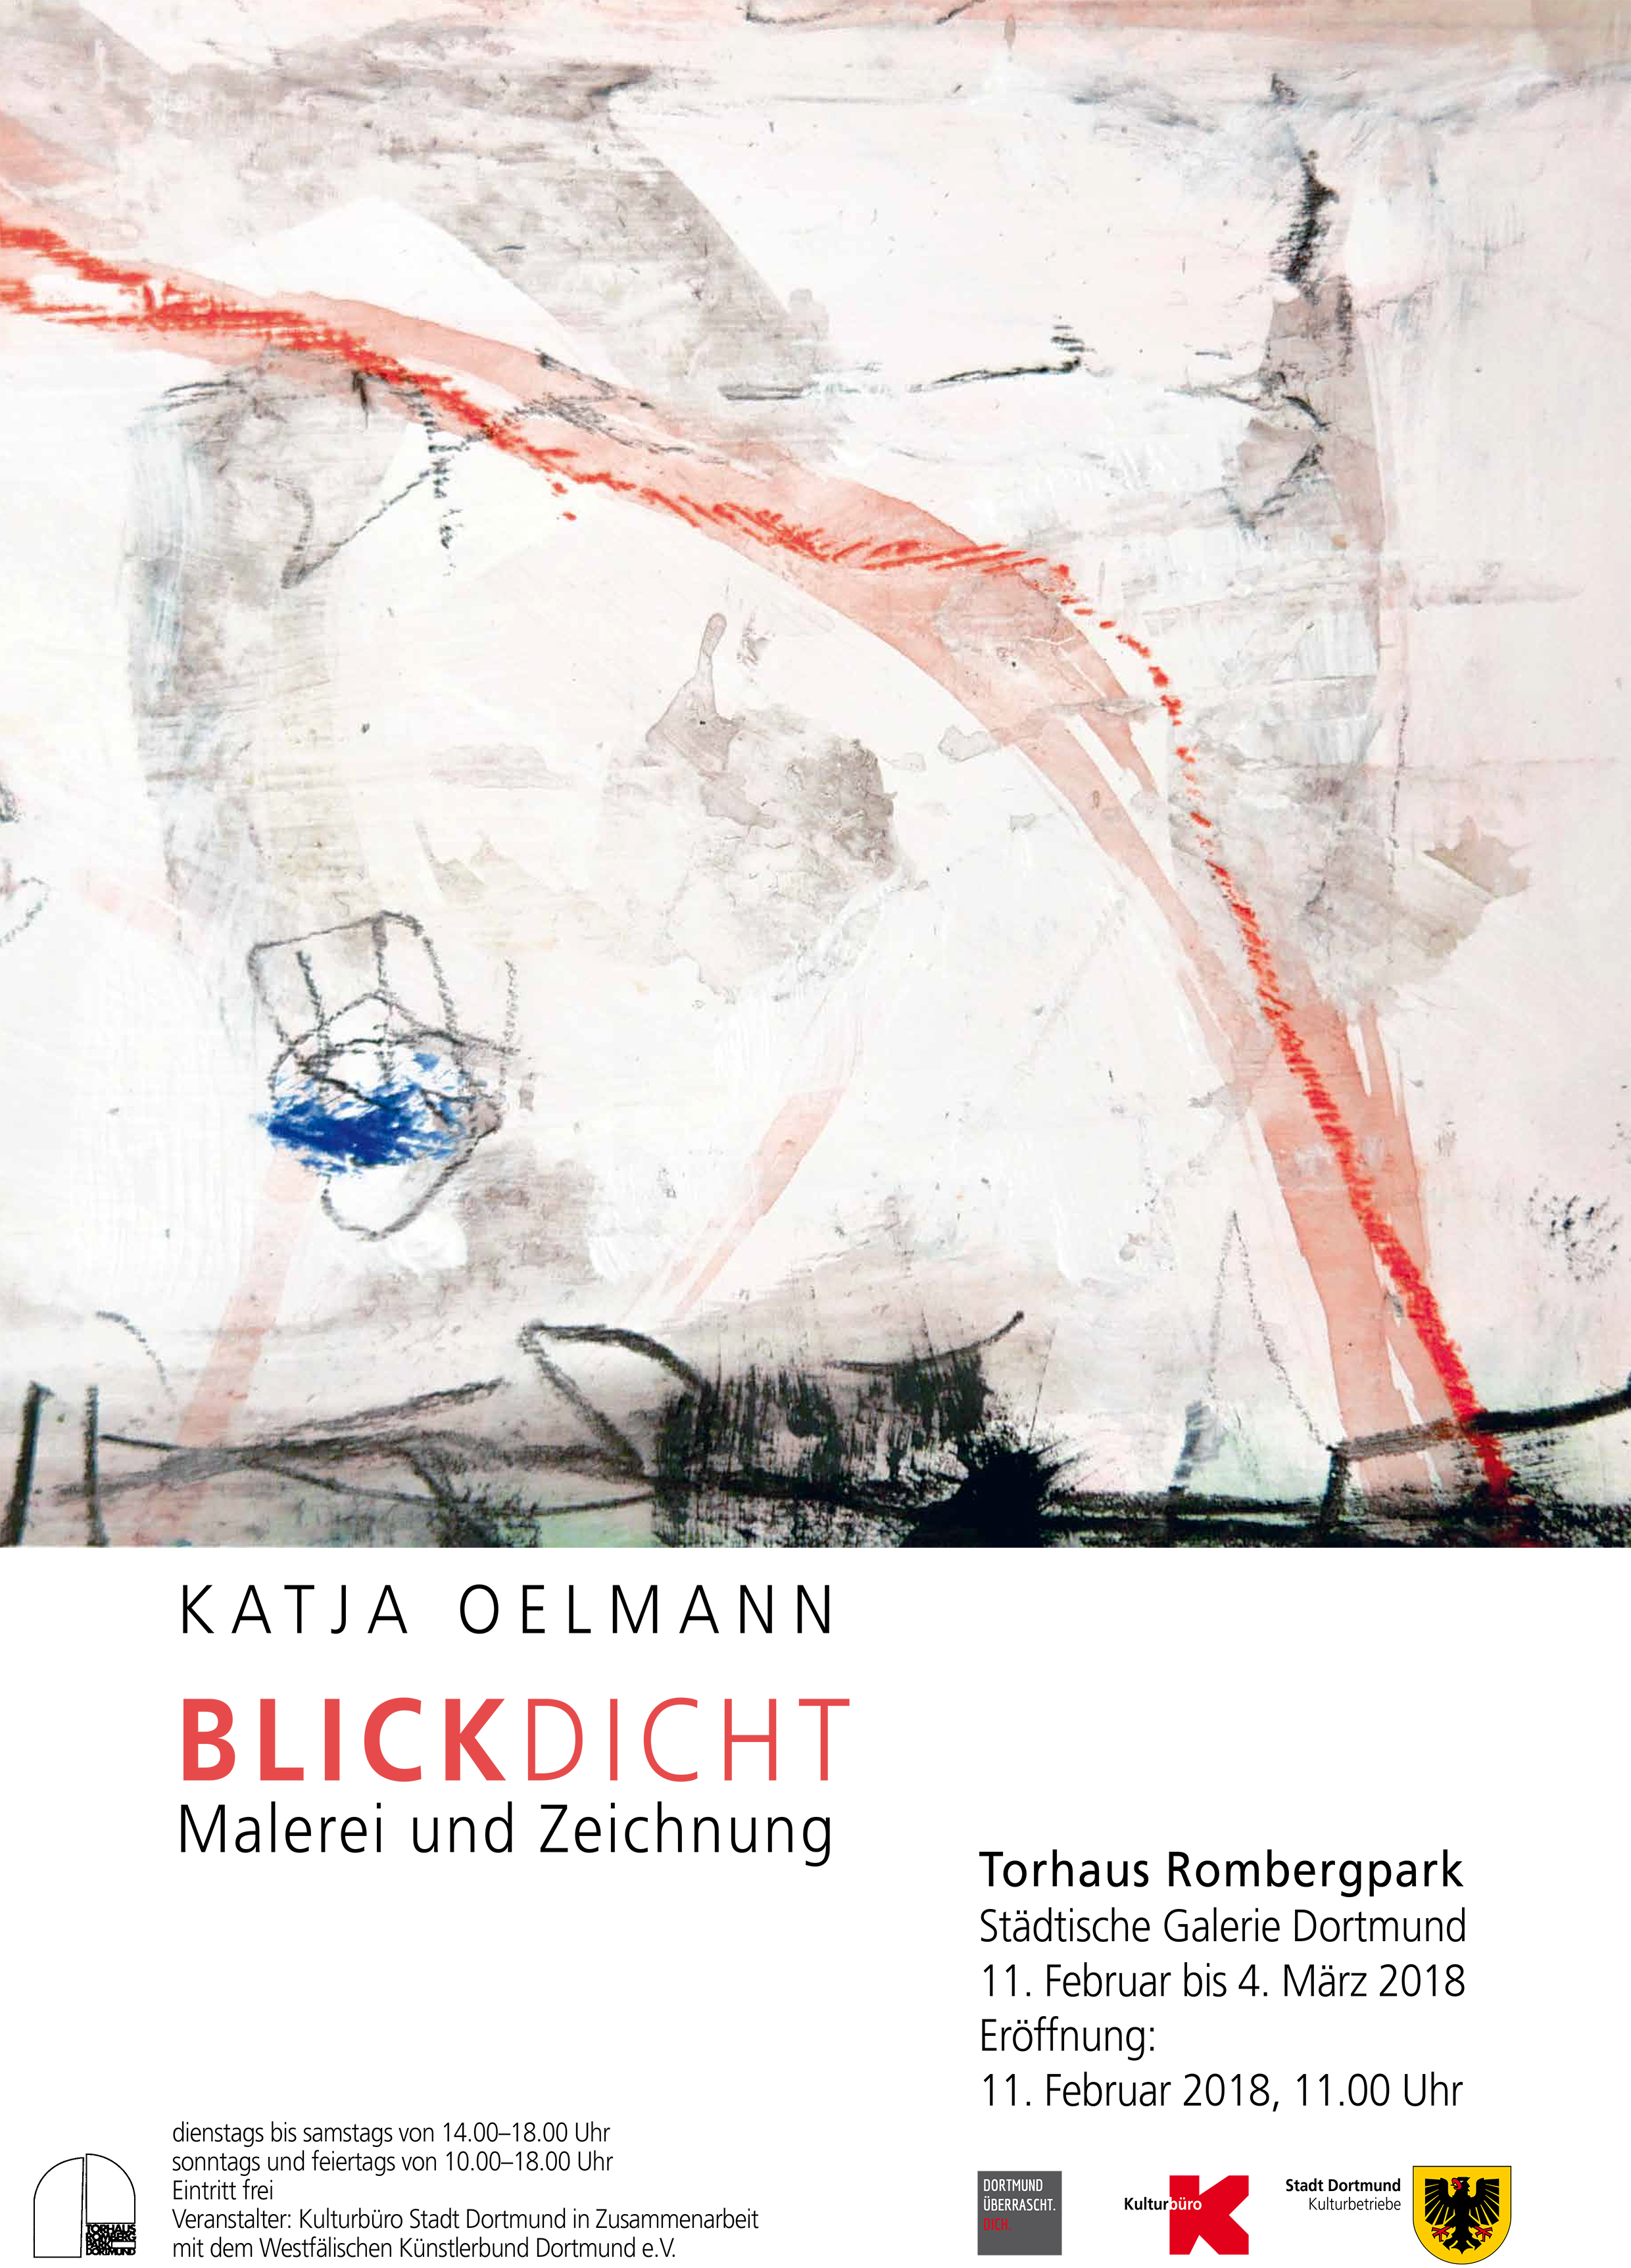 11. Februar bis 4. März 2018 „Blickdicht“ – Malerei und Zeichnung, Katja Oelmann | Städtische Galerie Torhaus Rombergpark